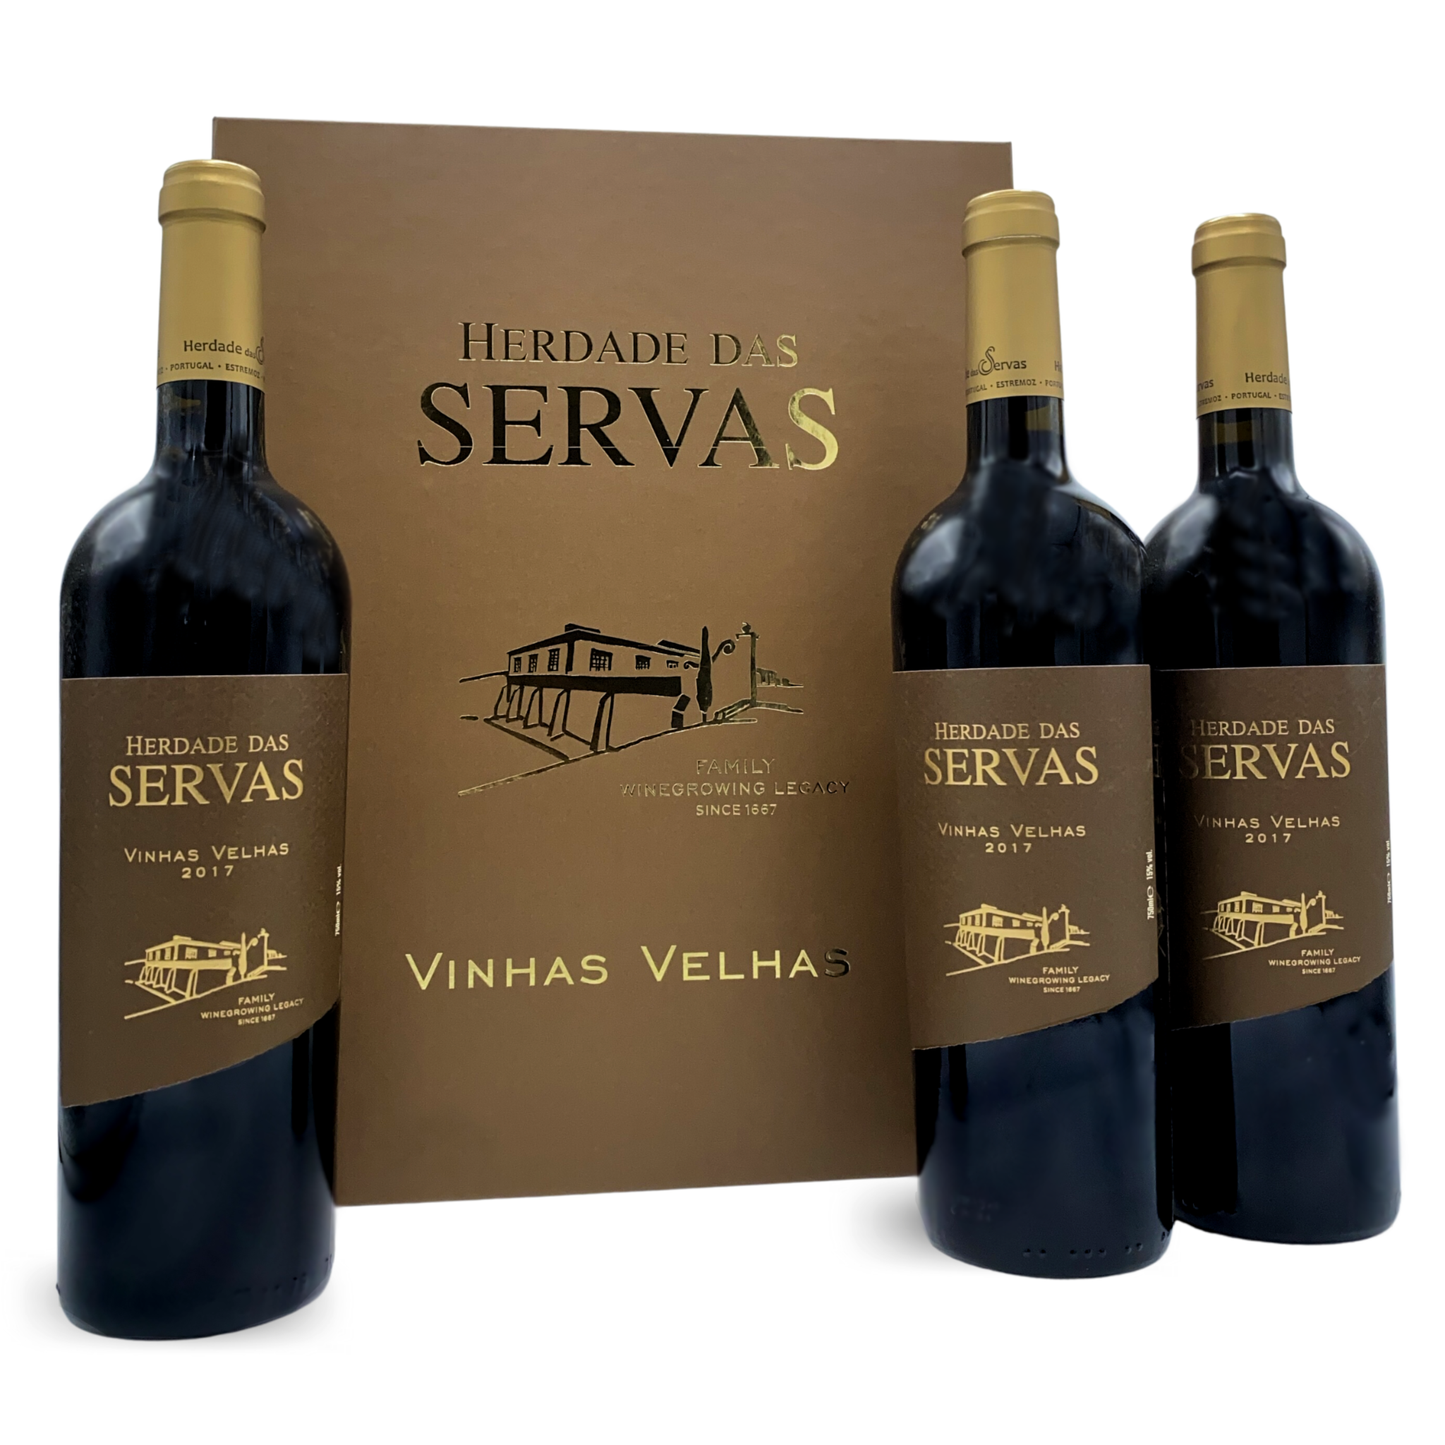 HERDADE DAS SERVAS VINHAS VELHAS: Rotwein vom Weingut Herdade das Servas aus der Region Estremoz – Alentejo/Portugal. 3er Set in schöner Holz-Weinkiste.